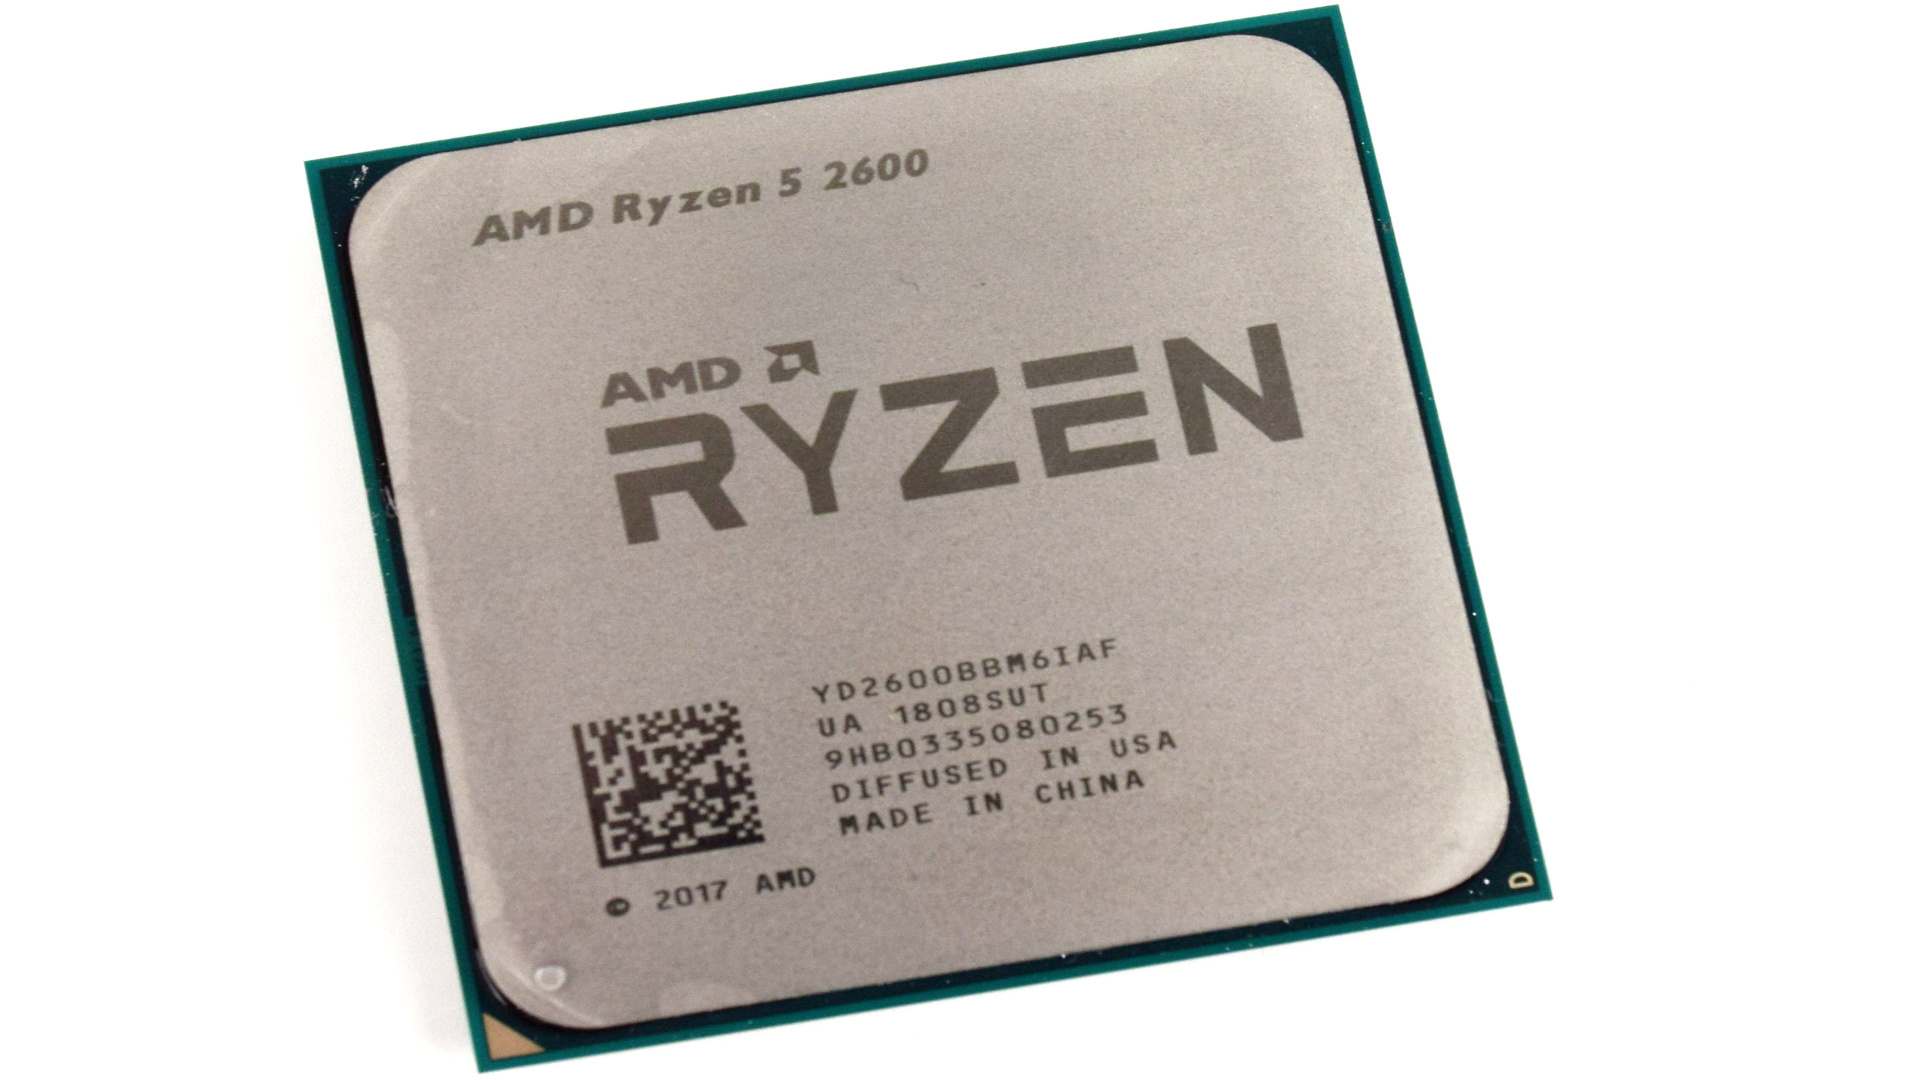 AMD Ryzen 5 2600 4